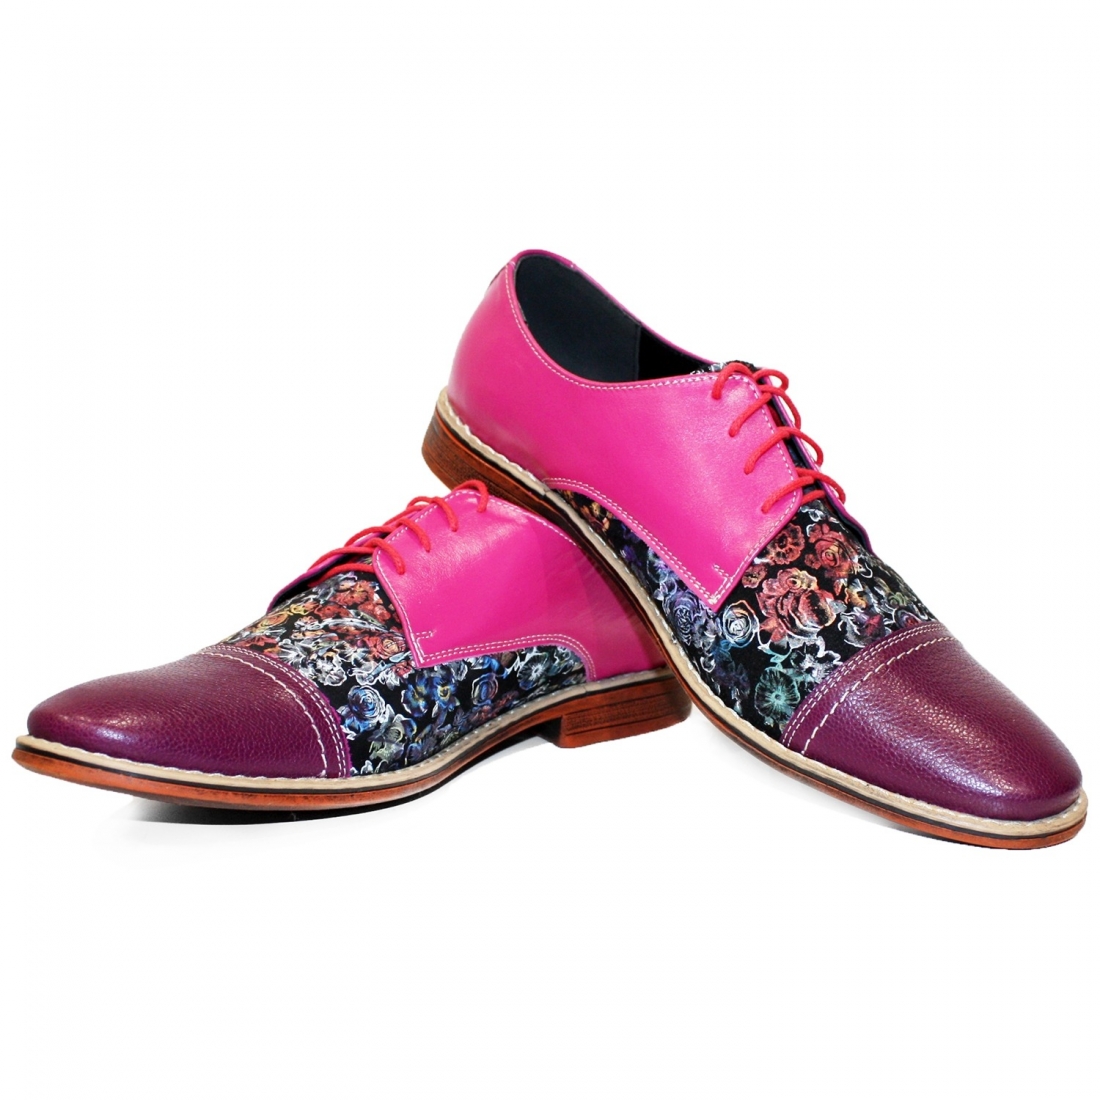 Modello Vollnero - Chaussure Classique - Handmade Colorful Italian Leather Shoes